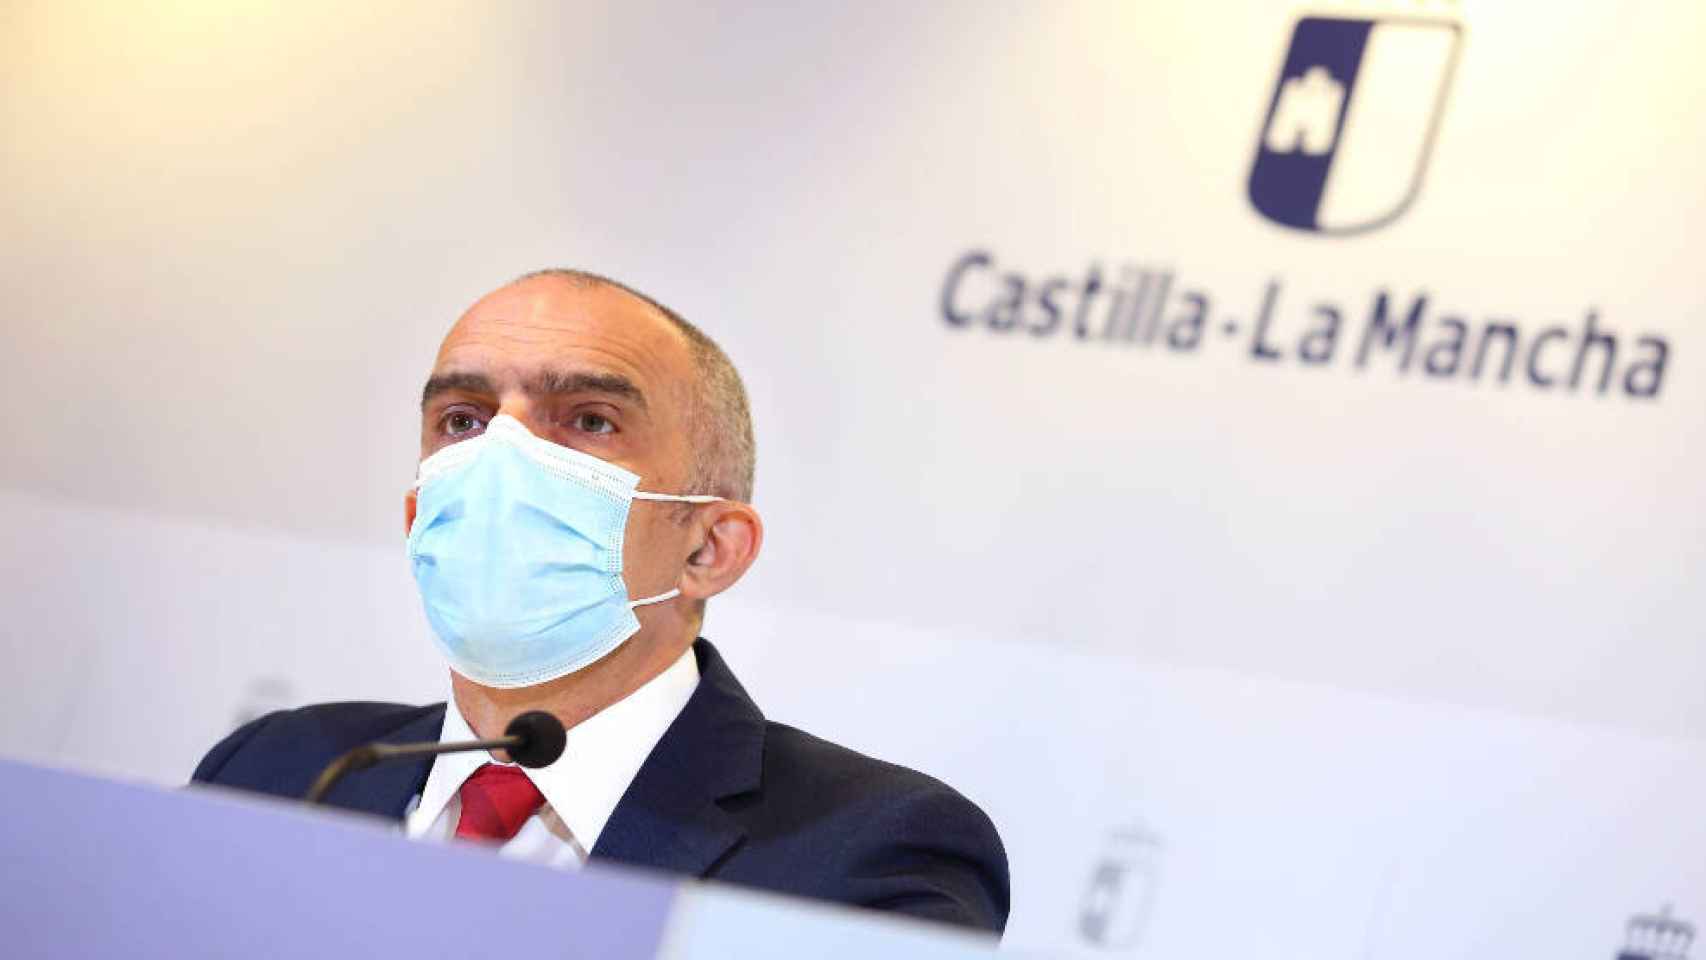 Juan Camacho, director general de Salud Pública de Castilla-La Mancha, en una imagen de archivo